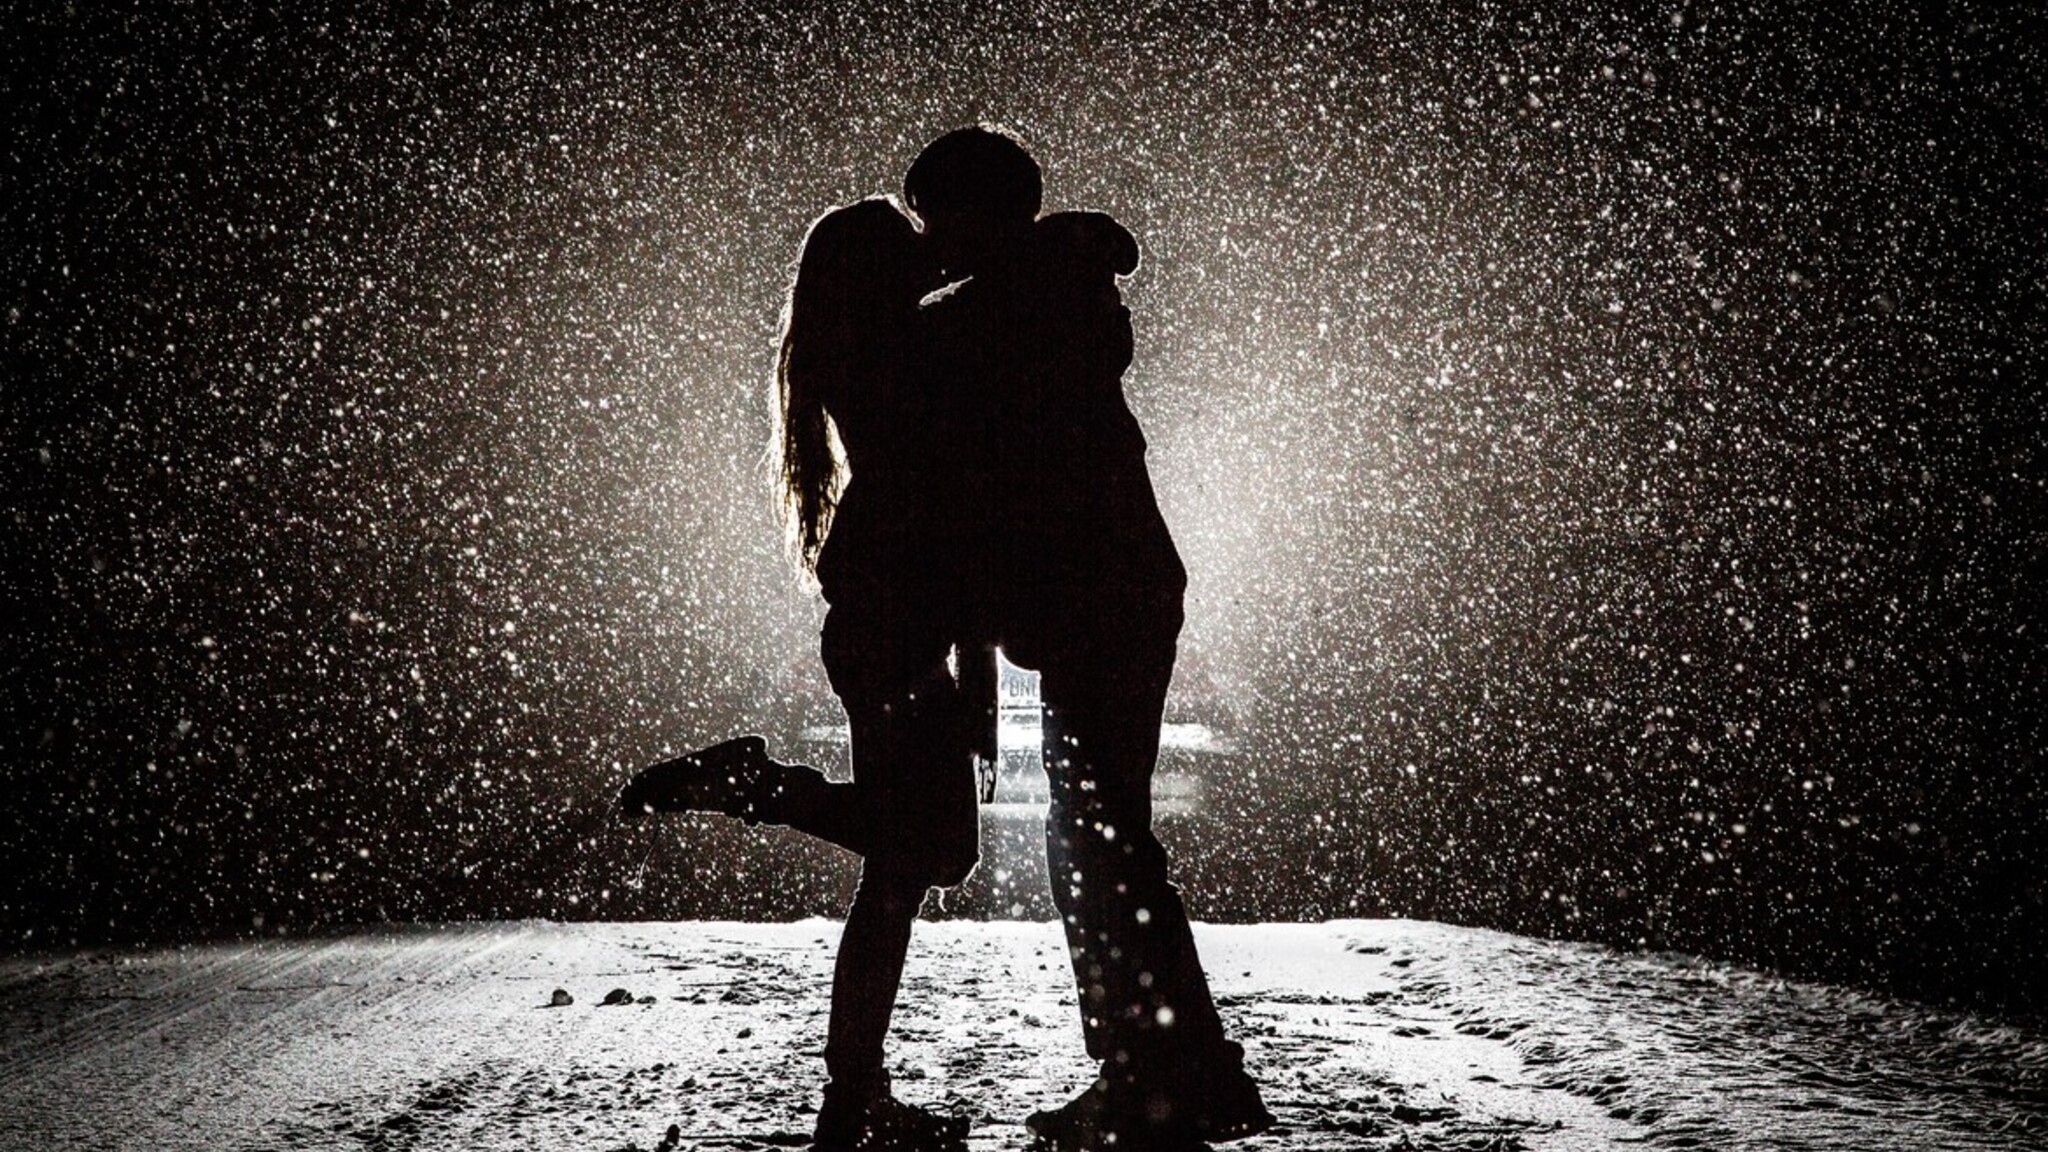 romantisches paar tapete küssen,romantik,stehen,schwarz und weiß,fotografie,wasser